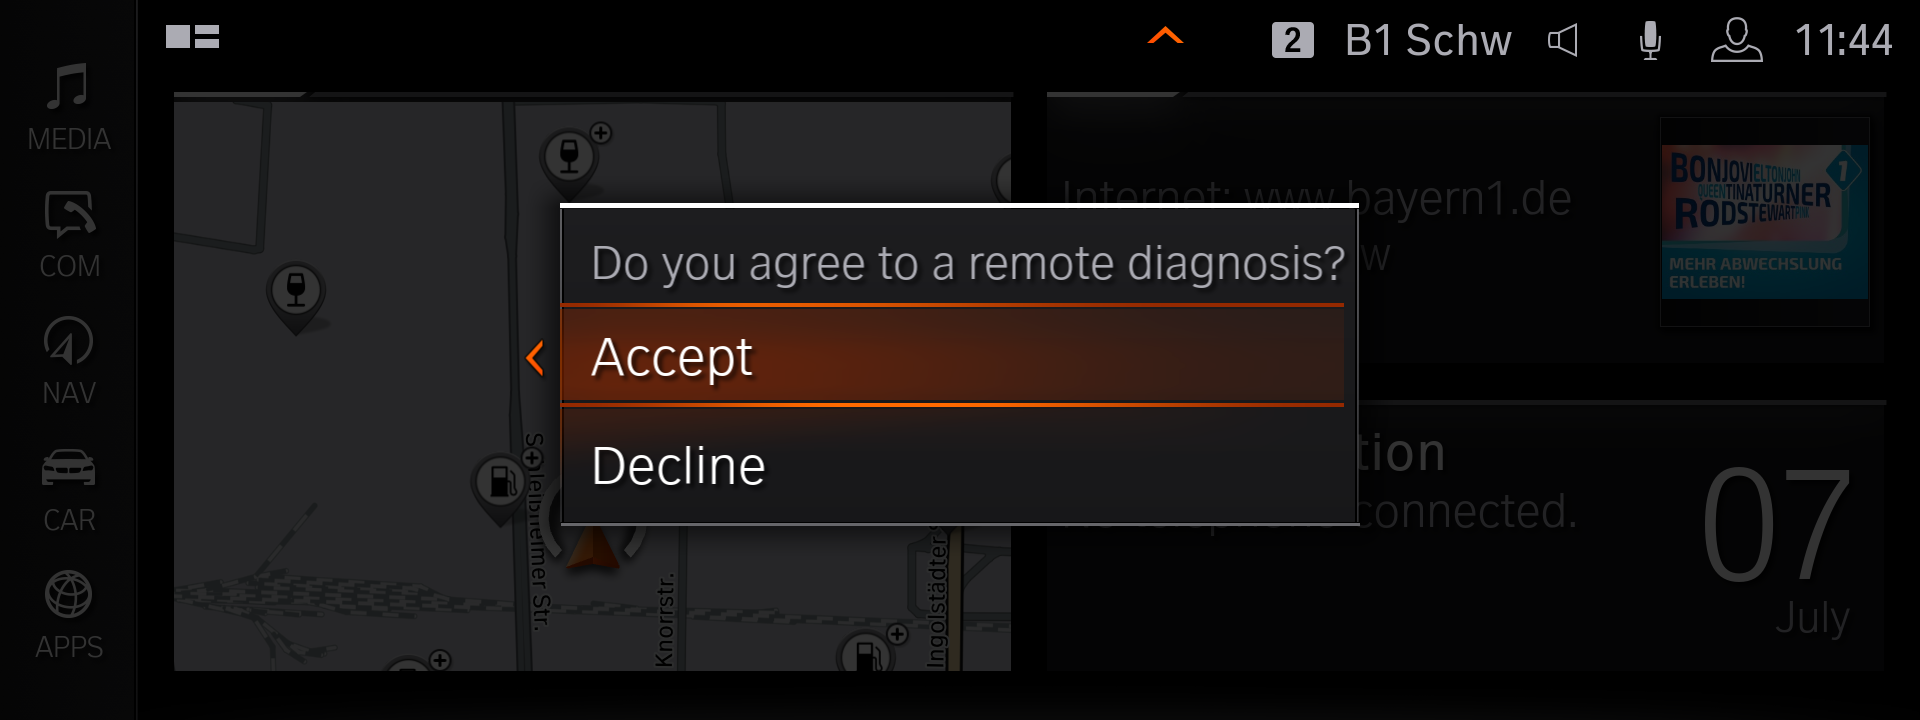  Remote diagnosis